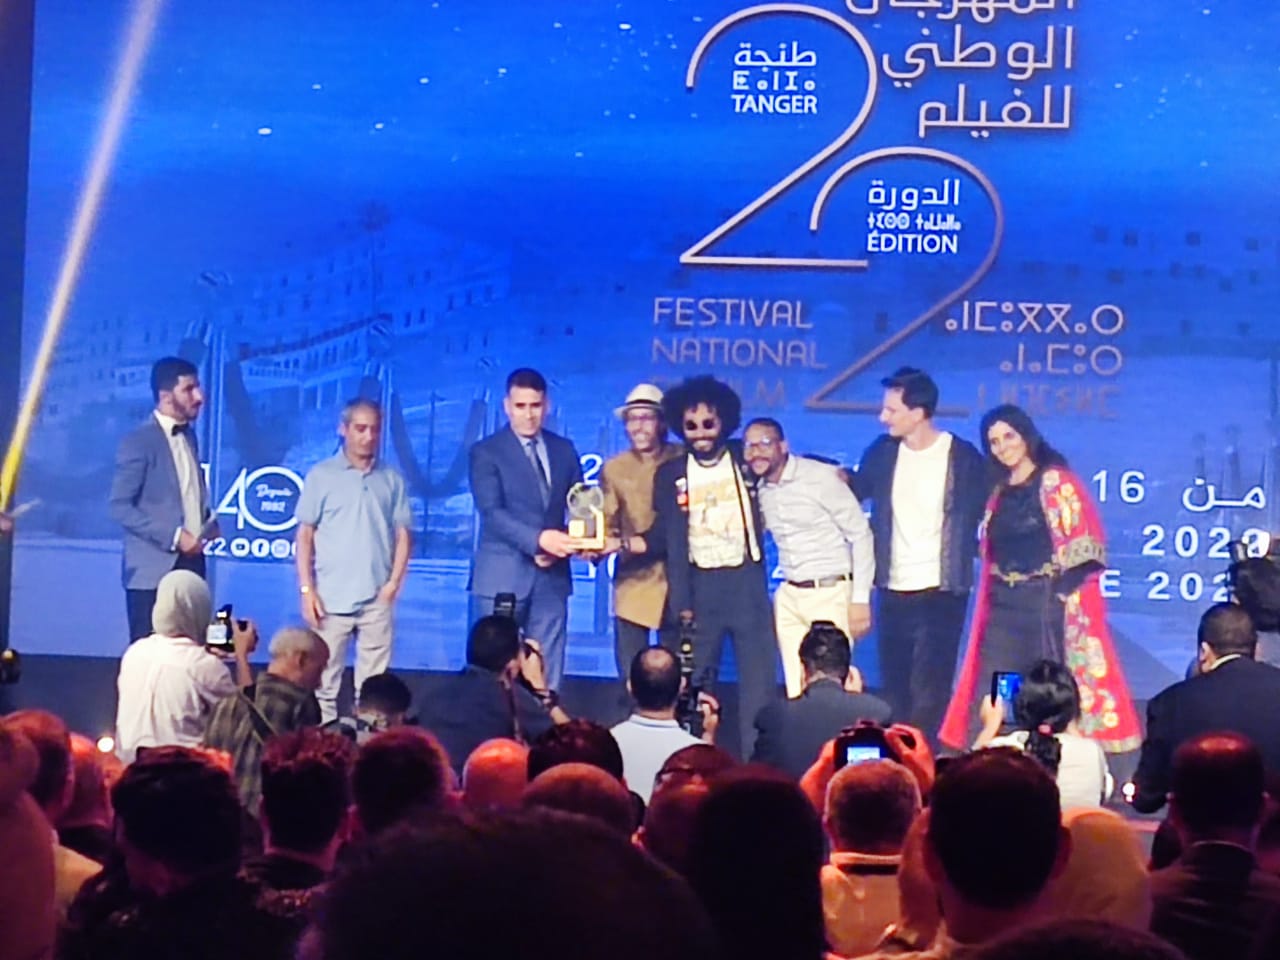 Festival national du Film/Maroc : Le long métrage « Zanka Contact » remporte le Grand prix